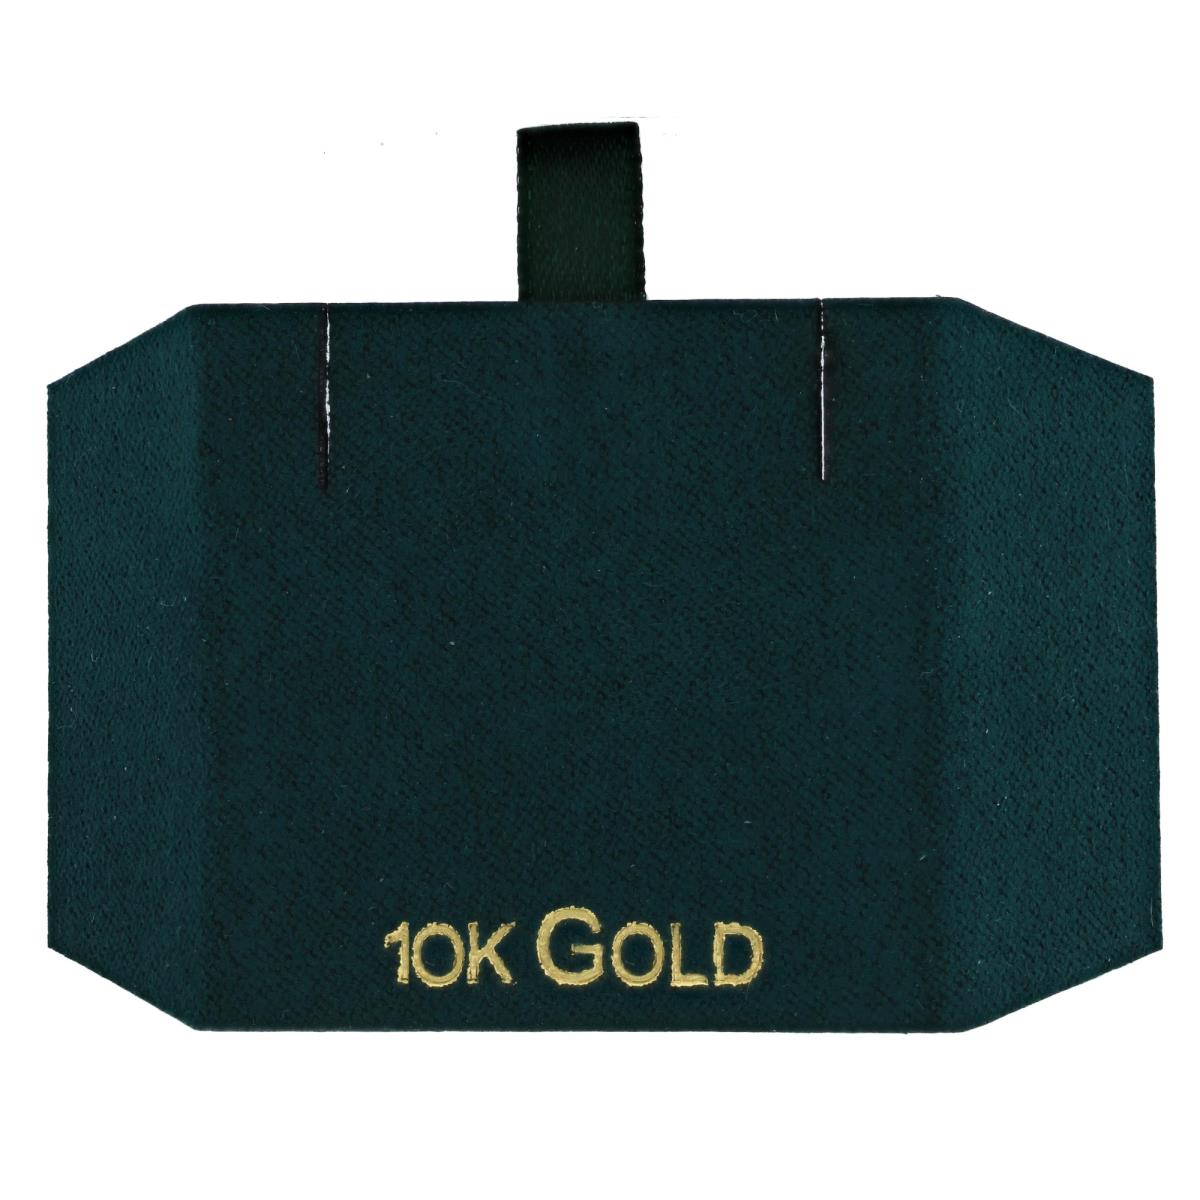 Green 10K GOLD, Gold Foil Necklace Insert (Box B06-159/Green/D)